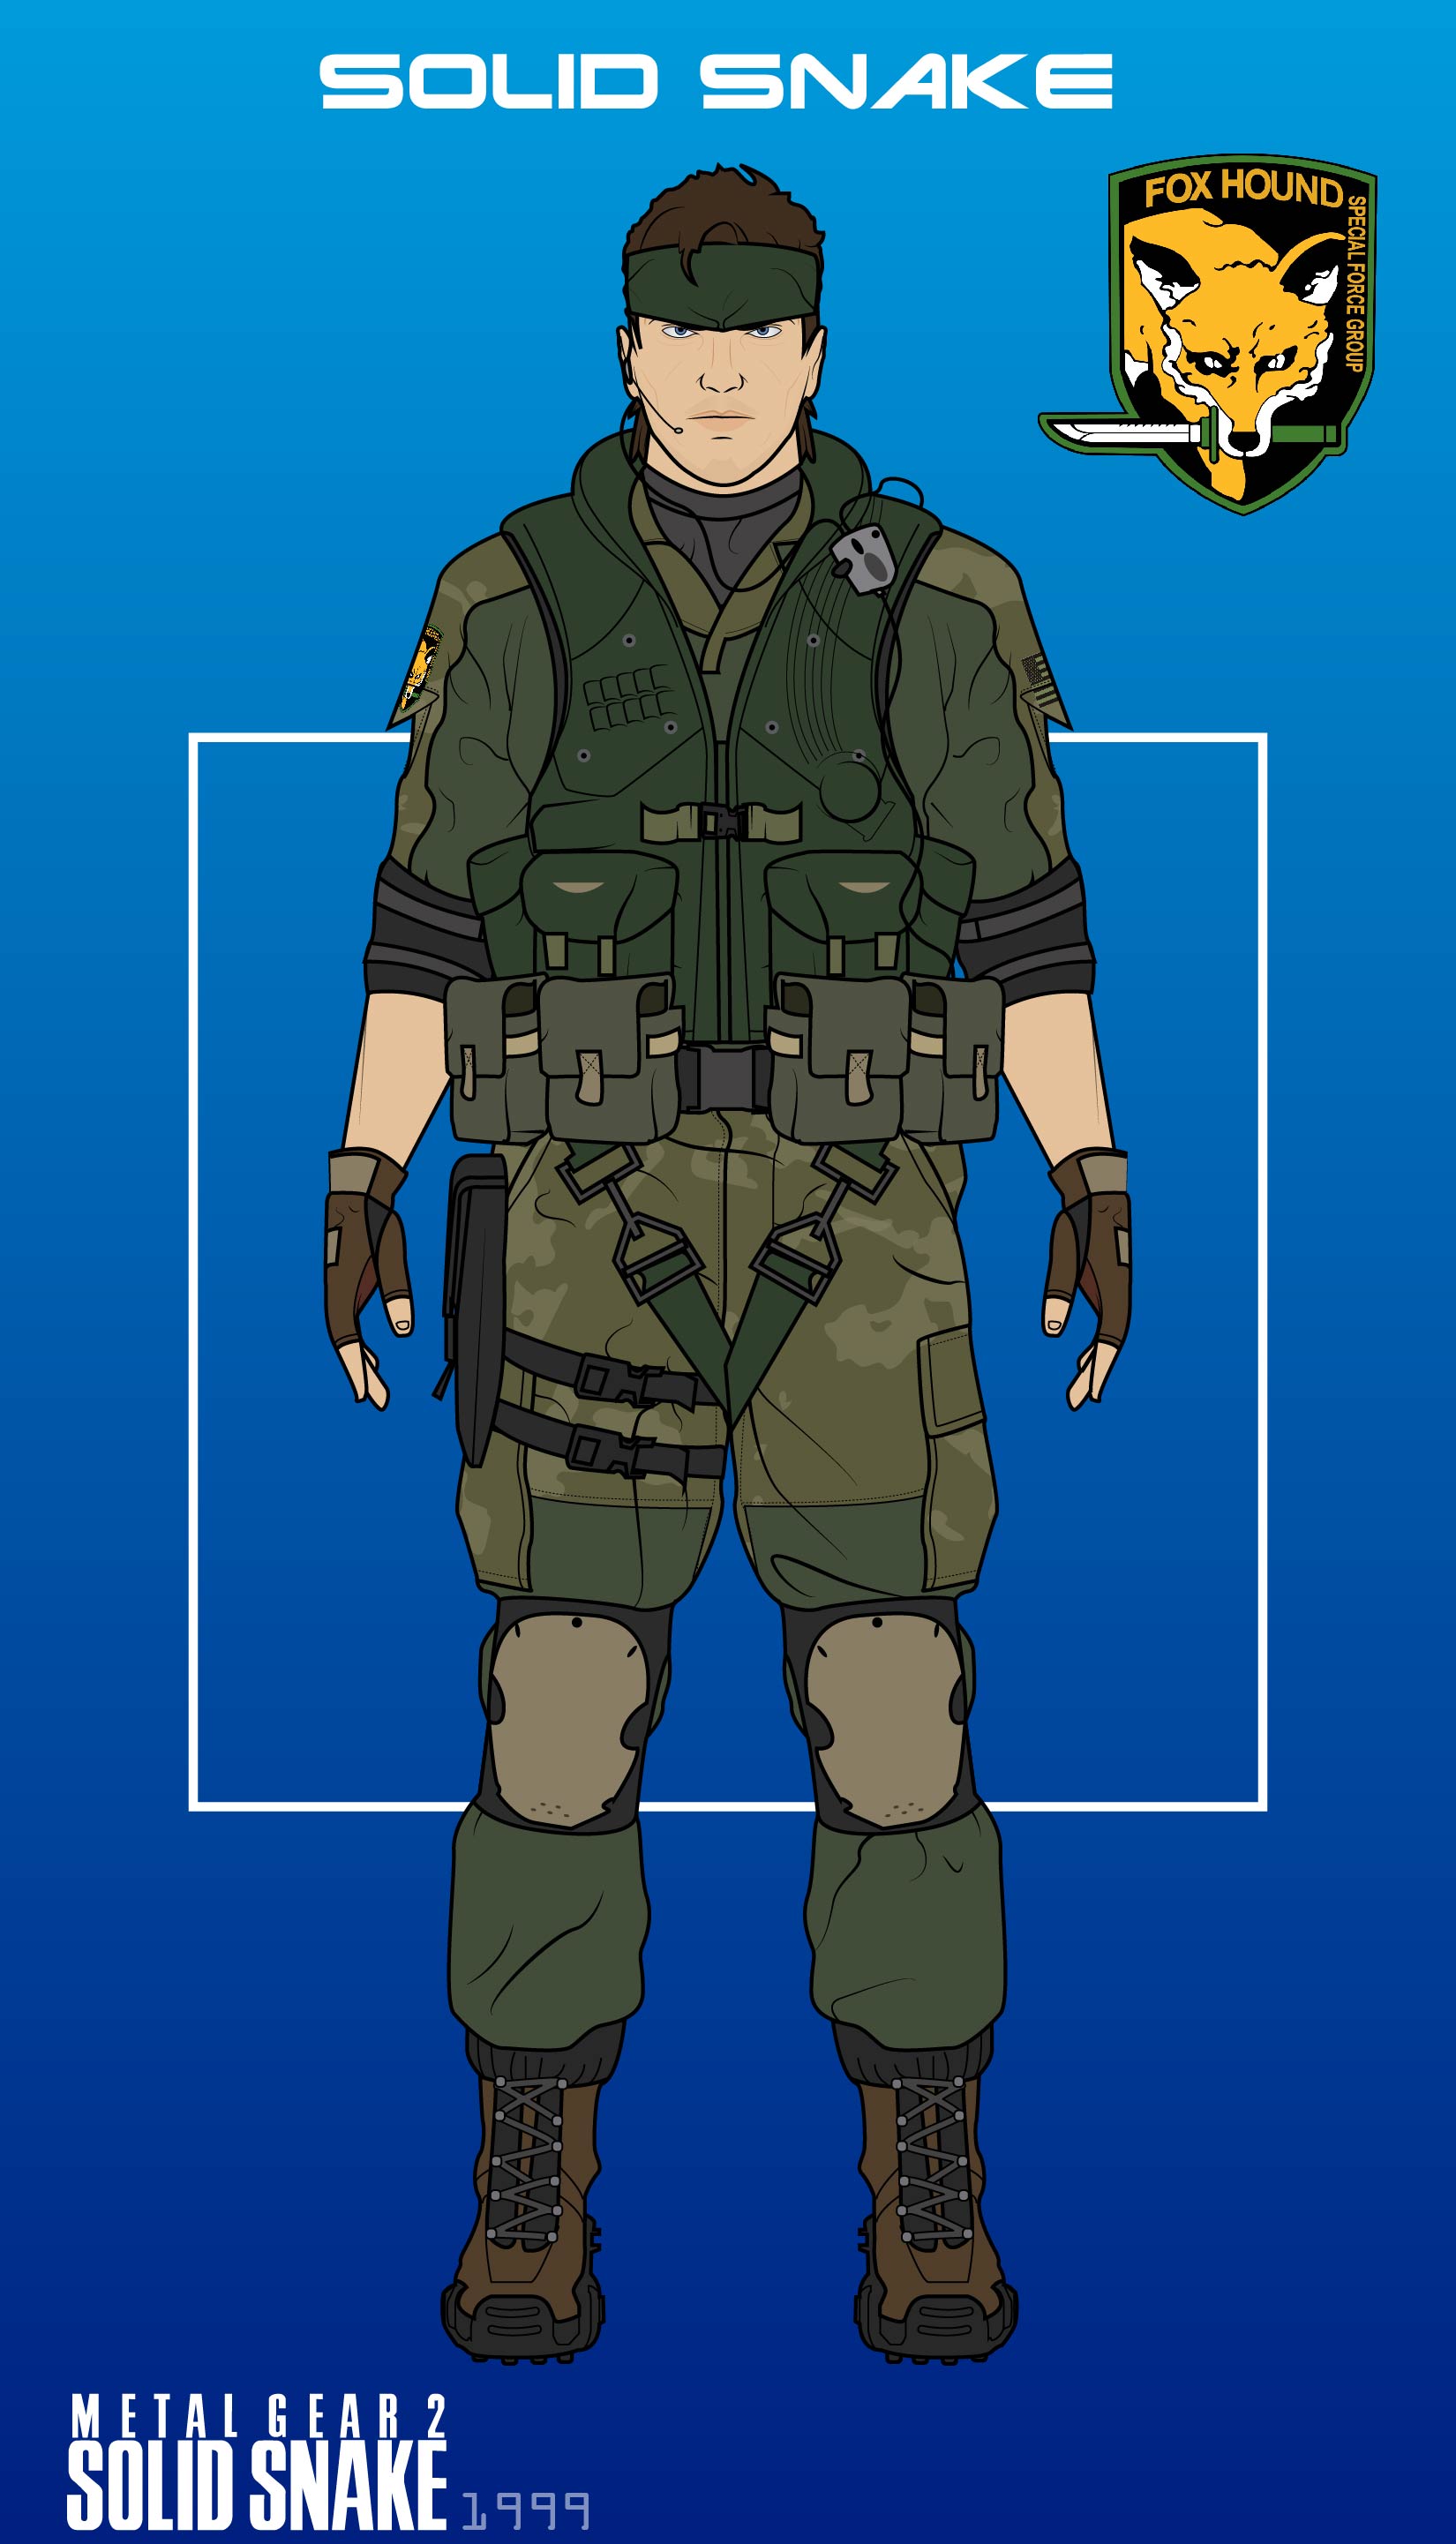 Metal Gear 2: Solid Snake - MSX2 - 1440p by kontxouso on DeviantArt